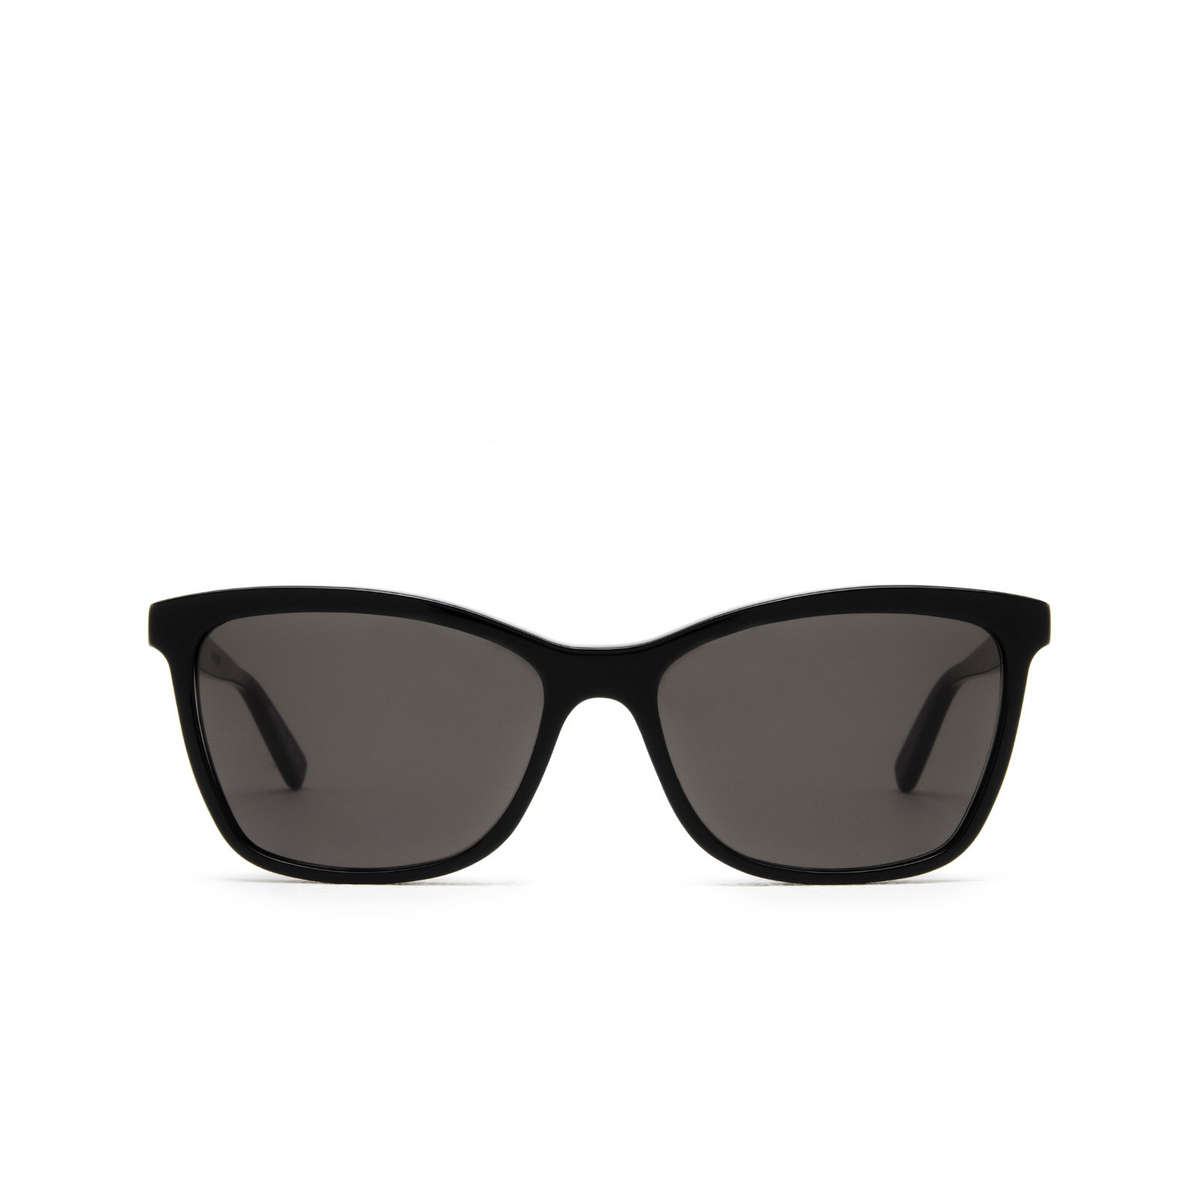 Saint Laurent® Cat-eye Sunglasses: SL 502 color Black 001 - front view.